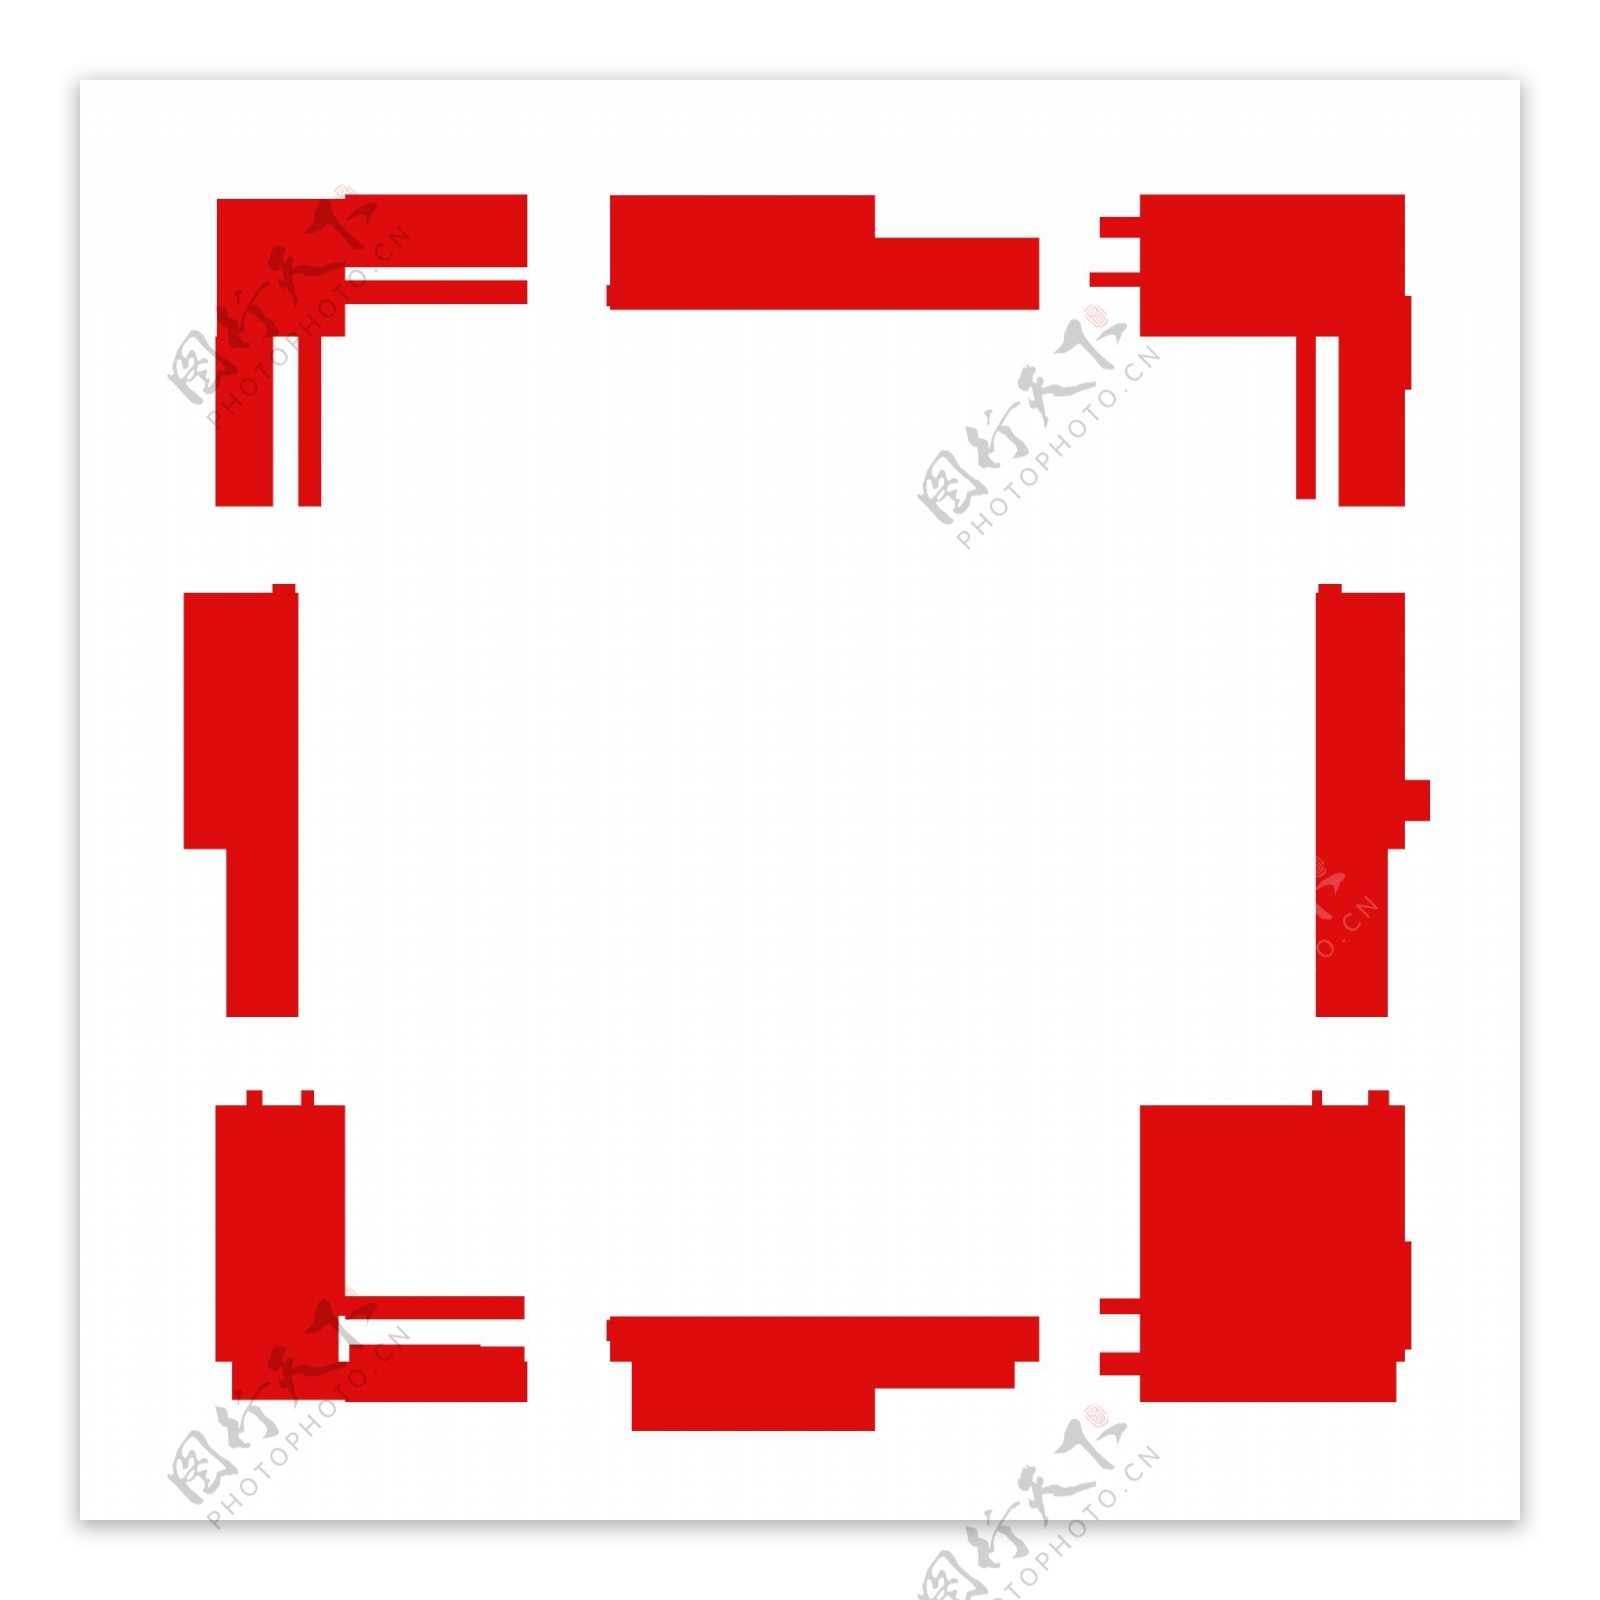 红色喜庆创意方形边框元素